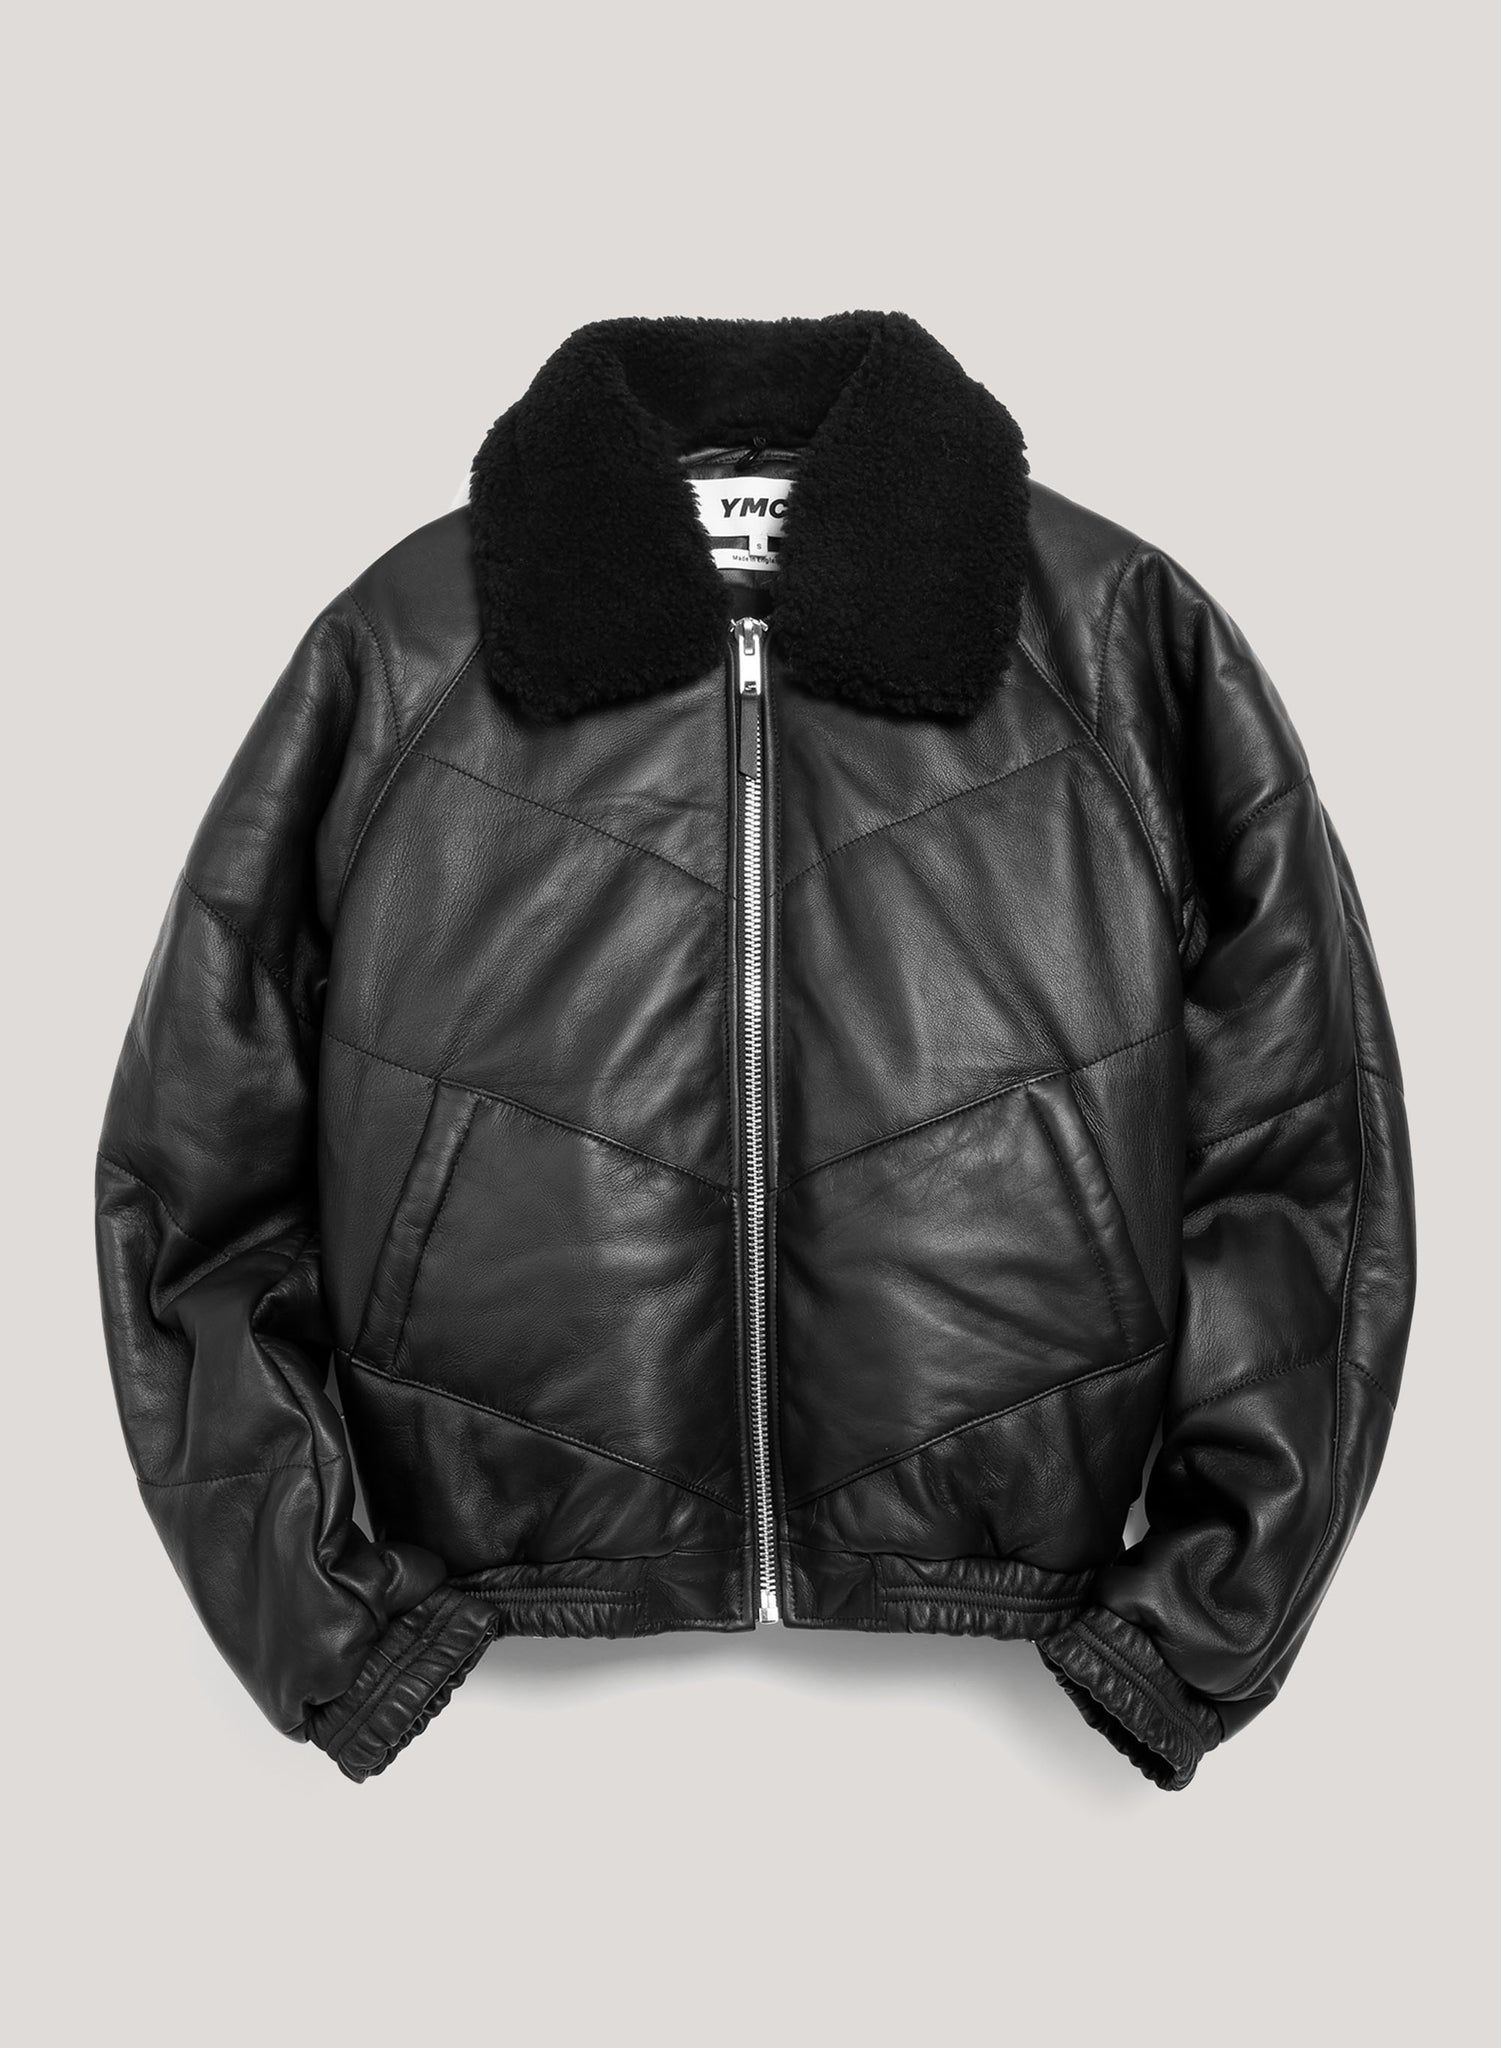 Kool Herc Wadded Leather Jacket in Black